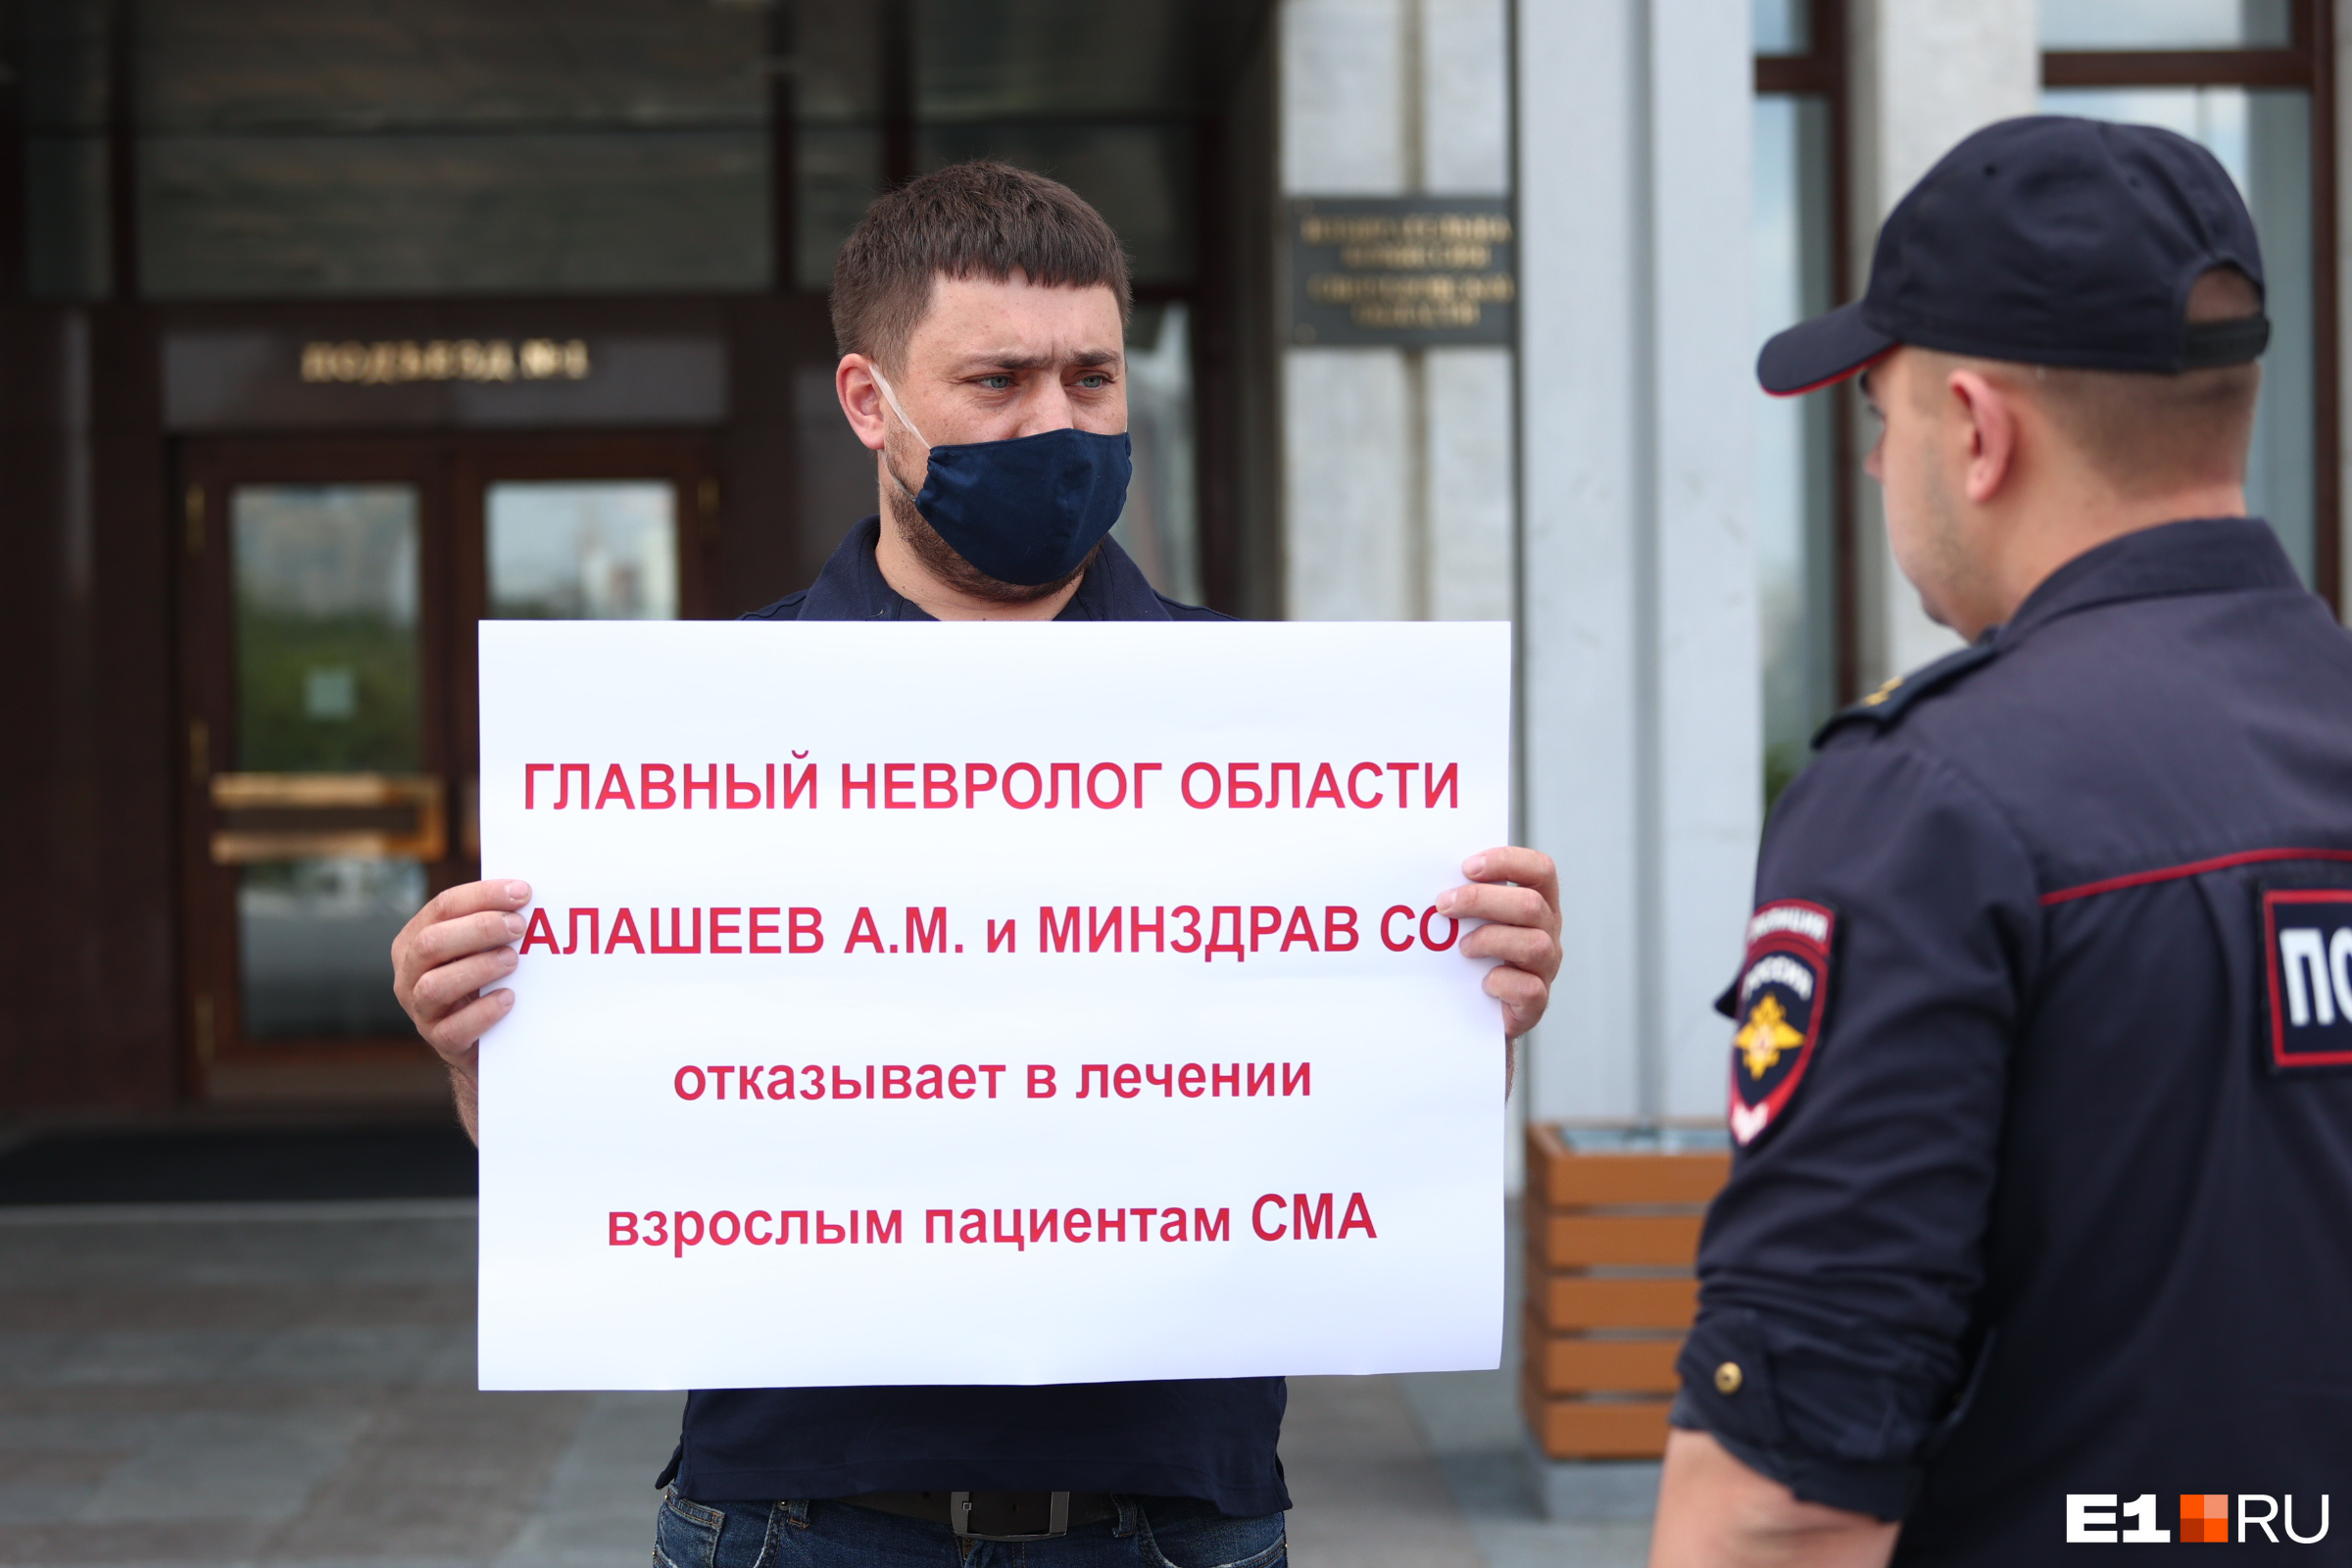 Во время пикета к Дмитрию подходили полицейские, но обошлось без задержания